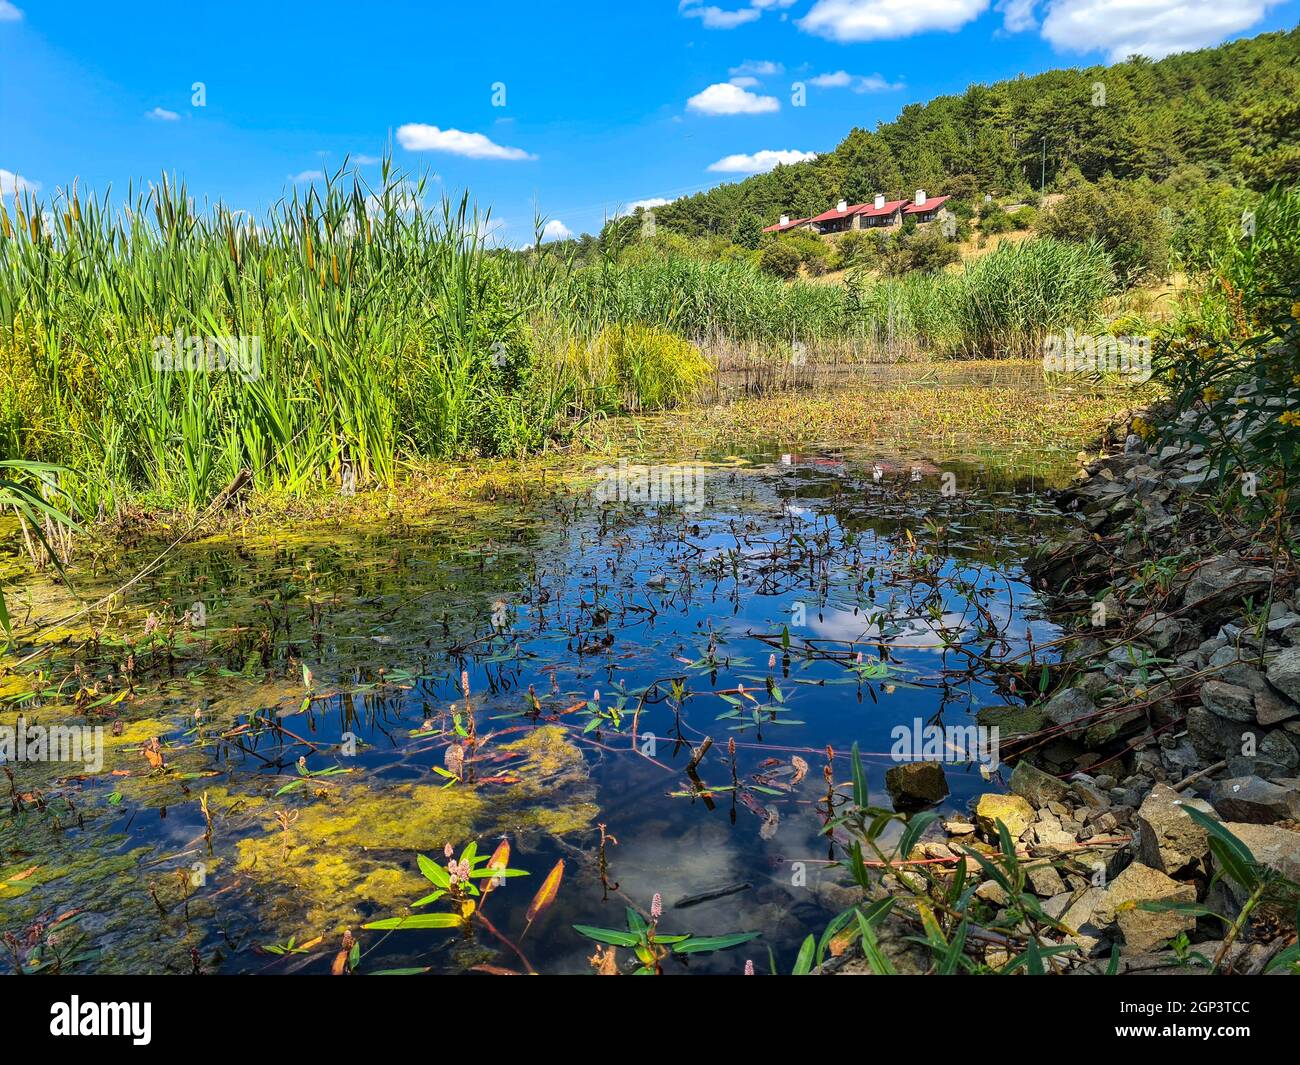 Reflet du ciel et des roseaux dans le lac.Parc national de Karagöl Turquie - Ankara. Banque D'Images